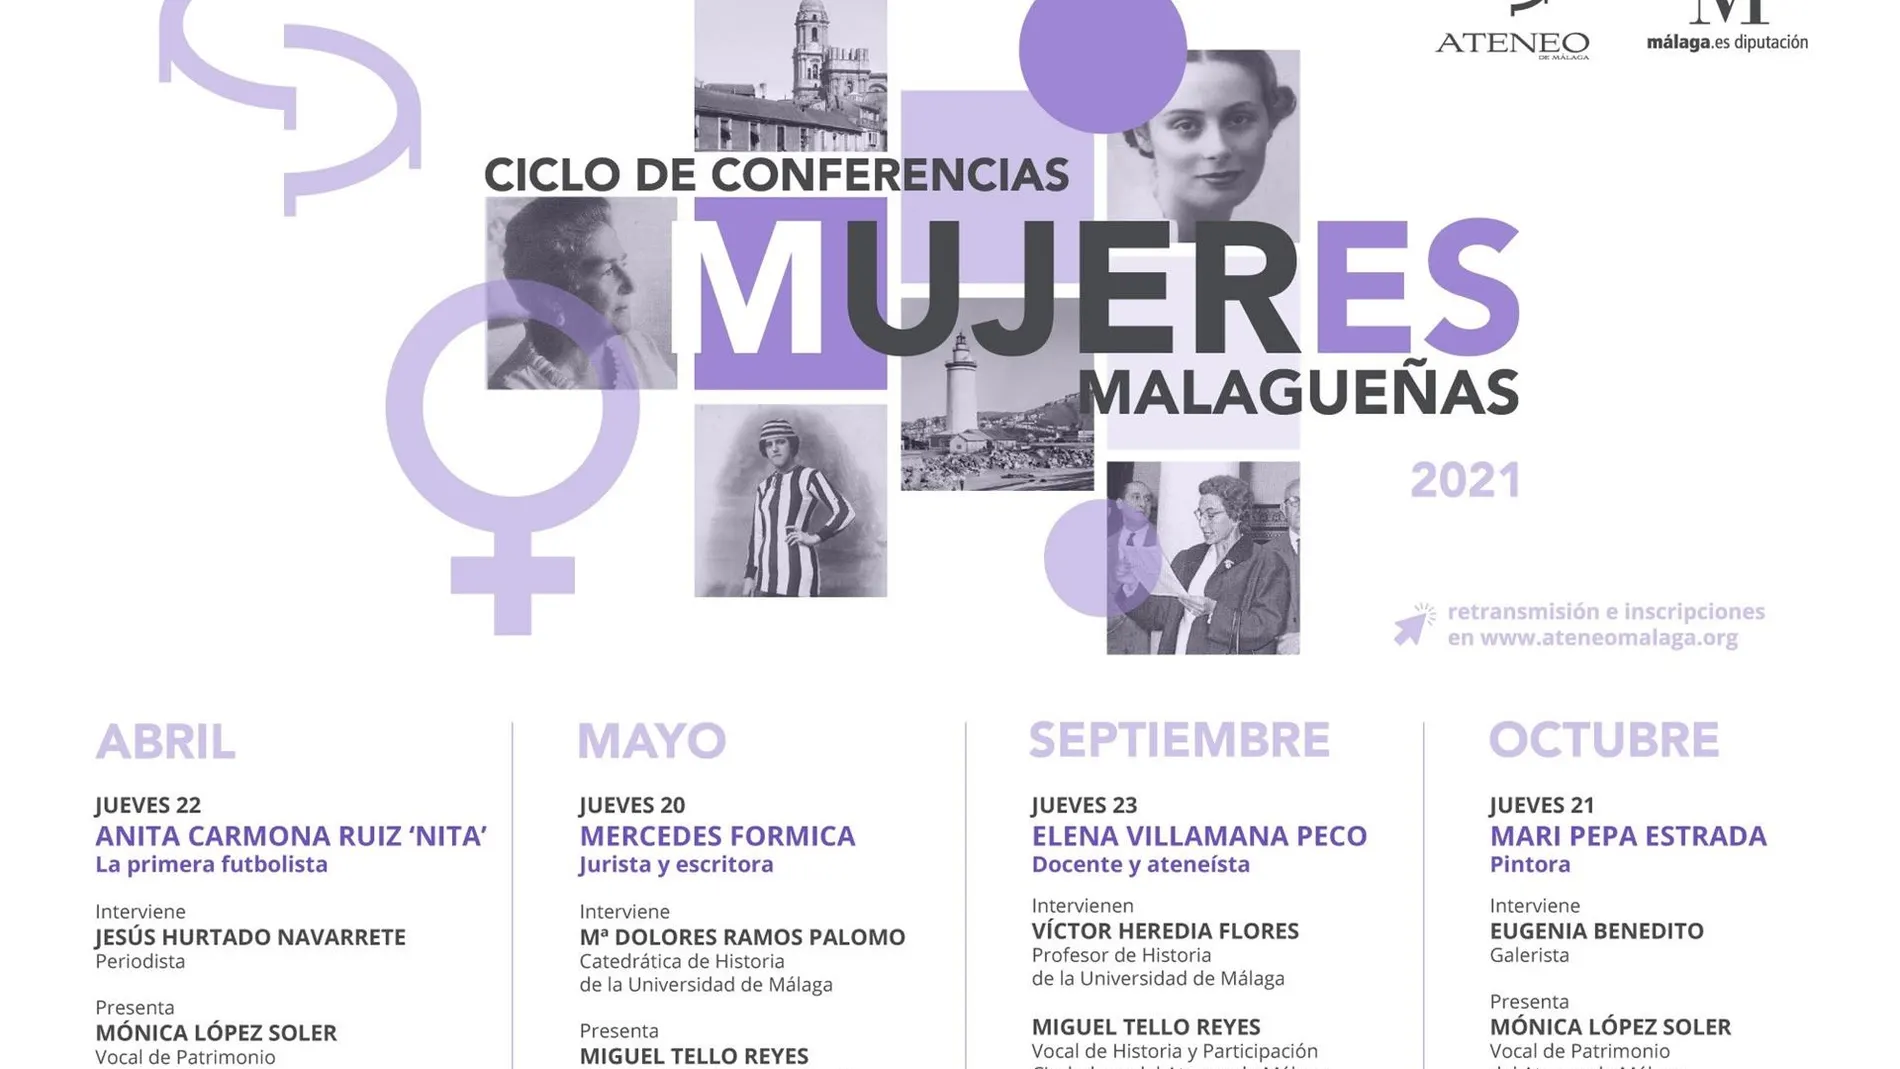 La Diputación y el Ateneo de Málaga vuelven a dedicar su programación cultural al mar y al papel de la mujer en la cultura malagueña